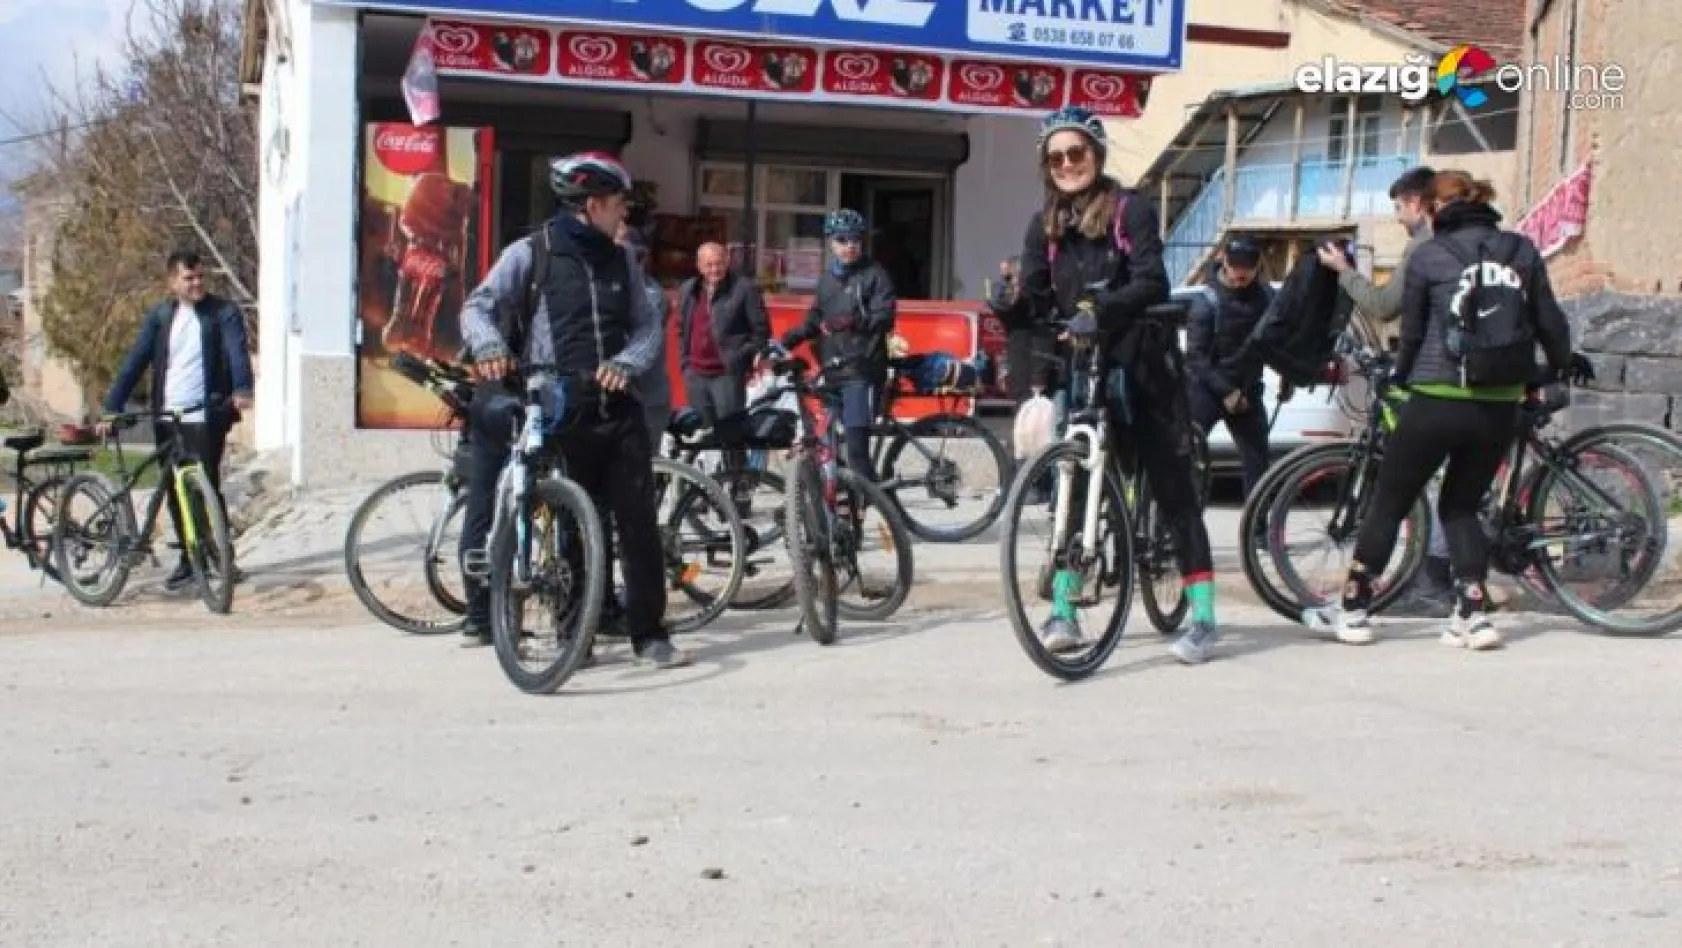 Elazığ Bisiklet Topluluğundan en anlamlı tur